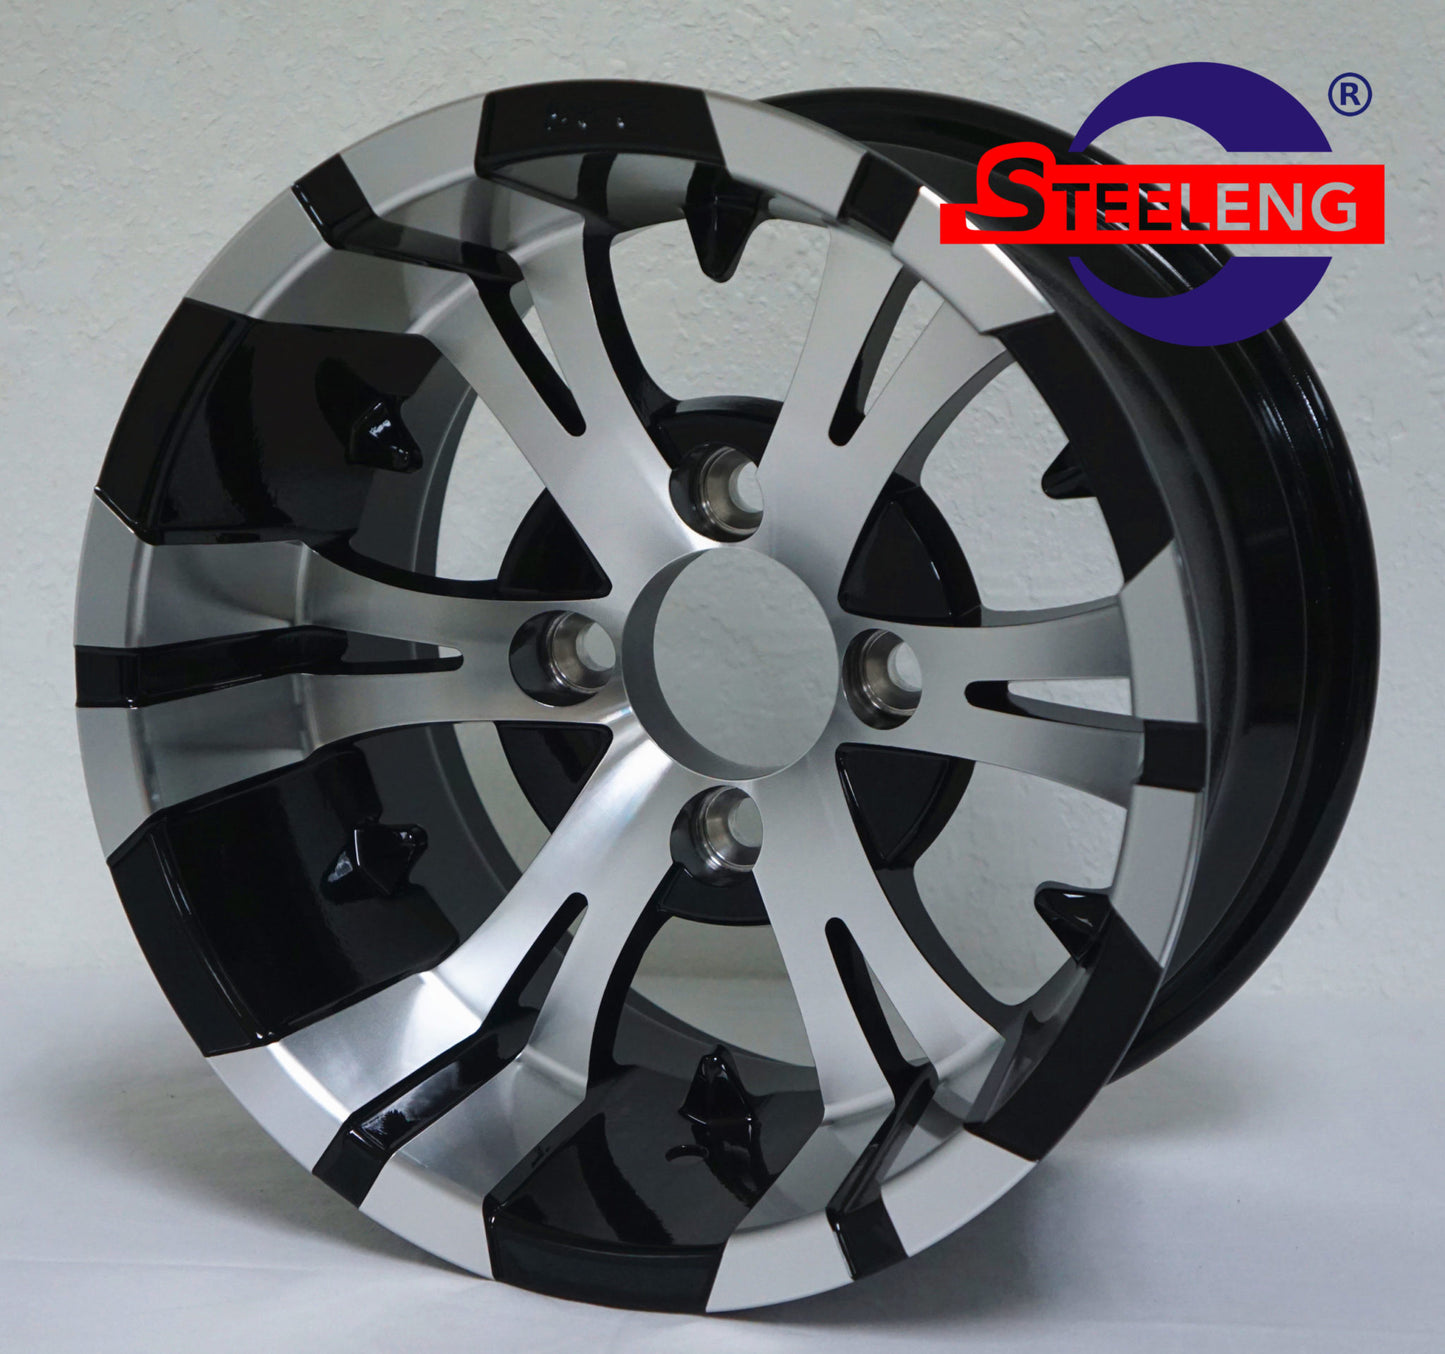 WH1245 – SGC 12″ Vampire Machined/Black Wheel – Aluminum Alloy